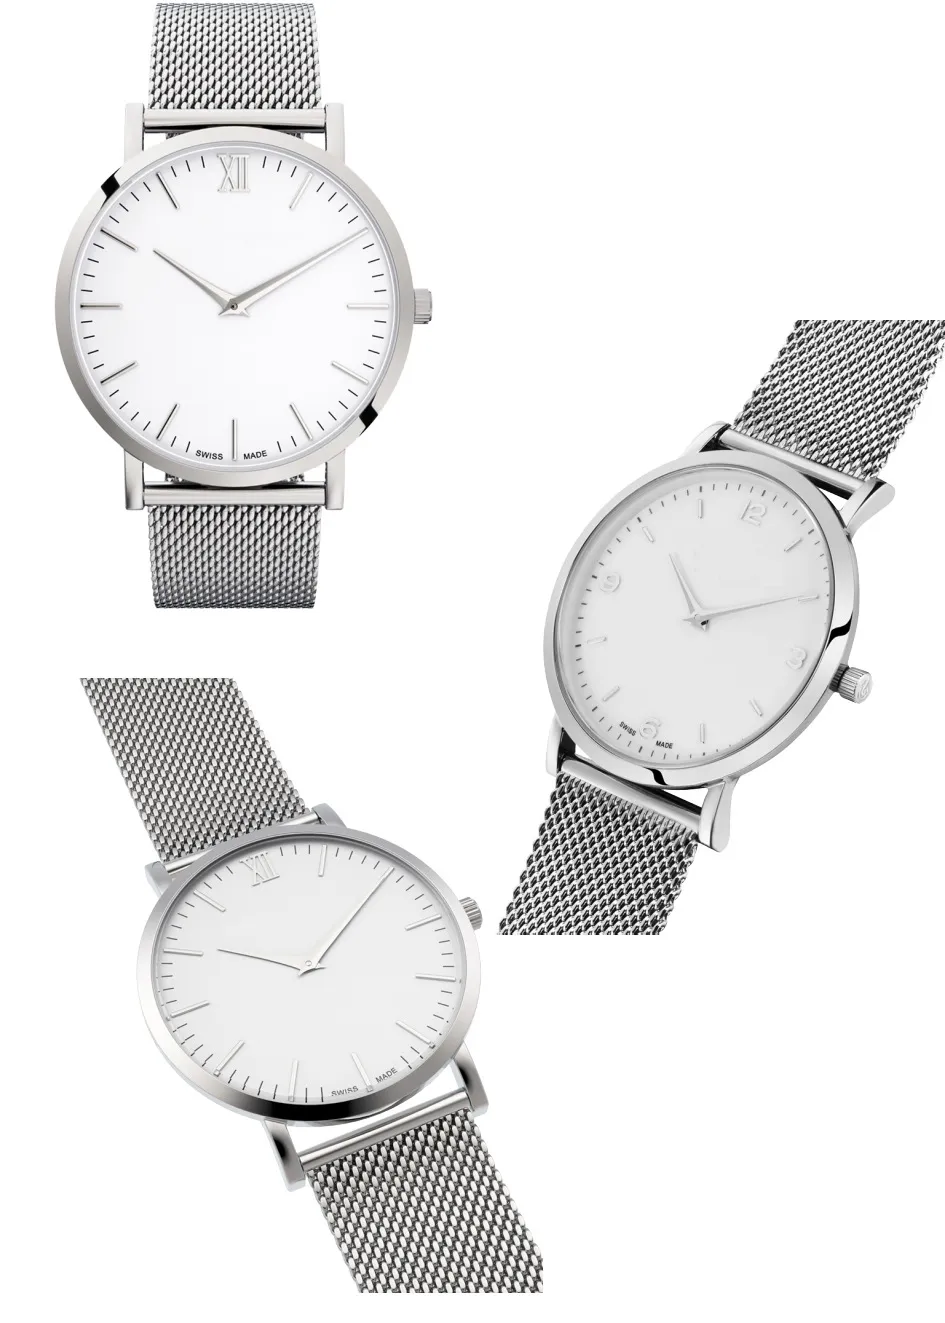 Marka mody zegarek luksusowe zegarki dla mężczyzn i kobiet słynne Montre kwarcowe zegarek ze stali nierdzewnej Paski sportowe 270R